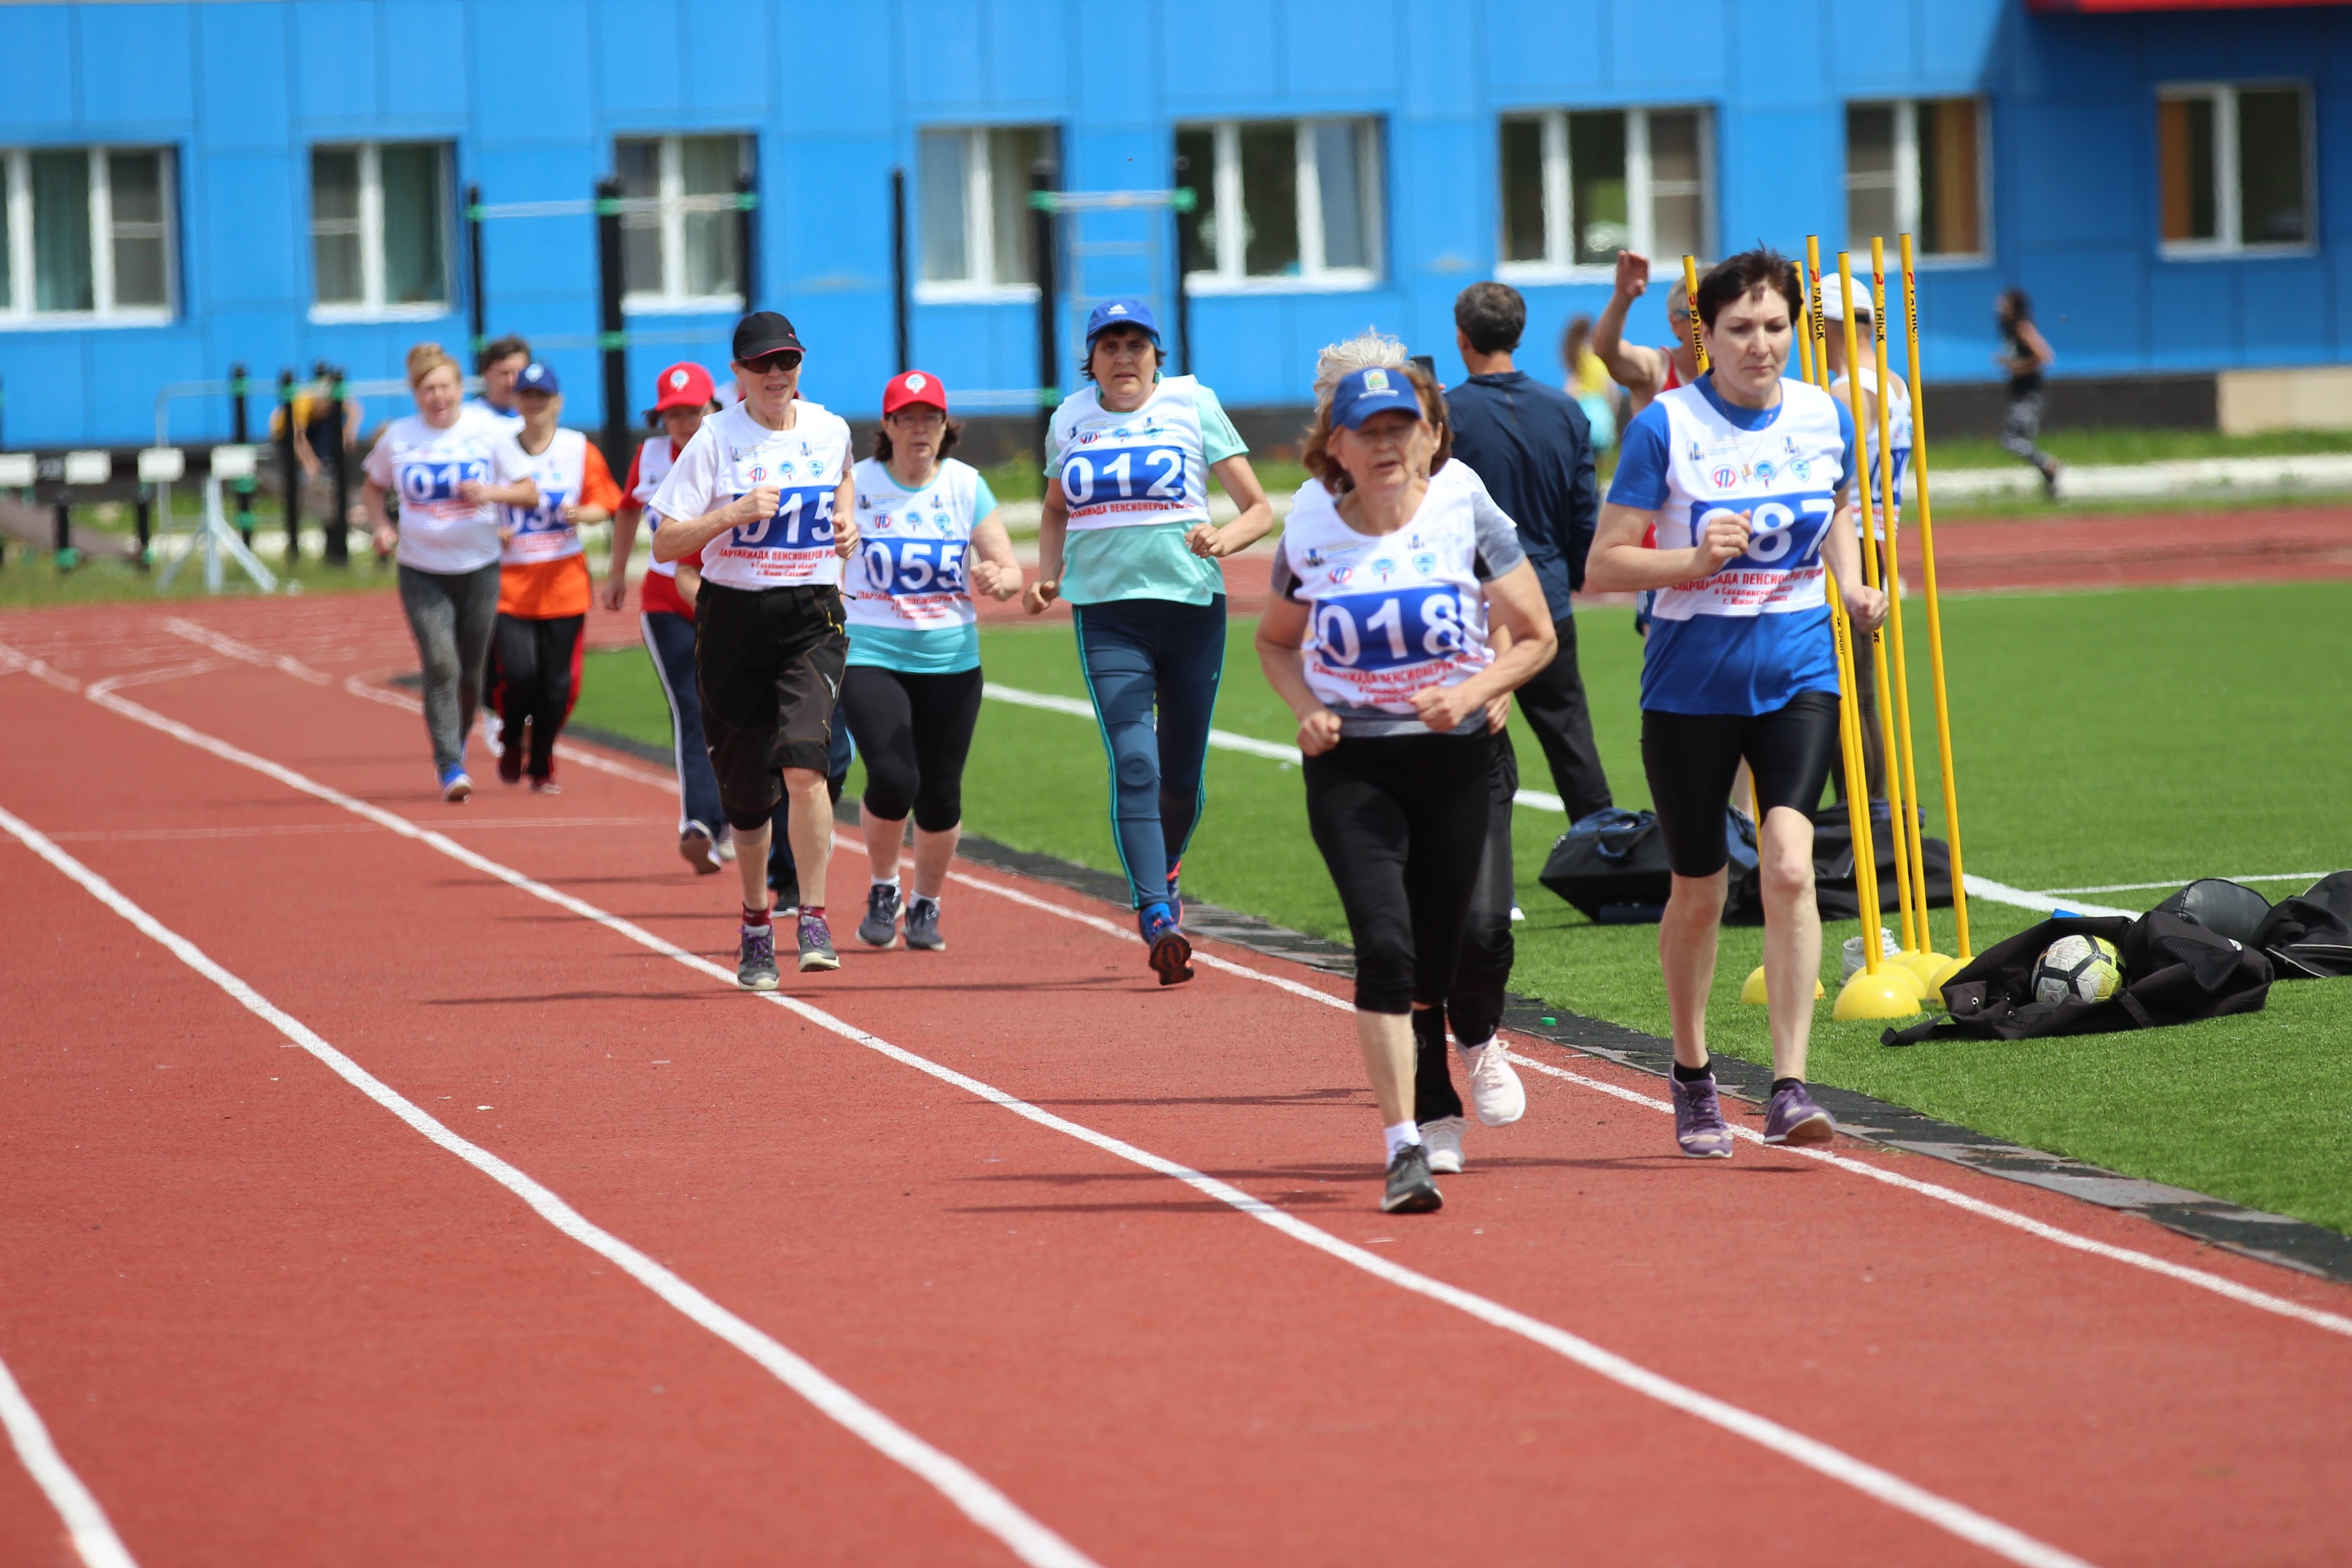 Забег на 1000 метров в зачет Спартакиады пенсионеров Сахалинской области